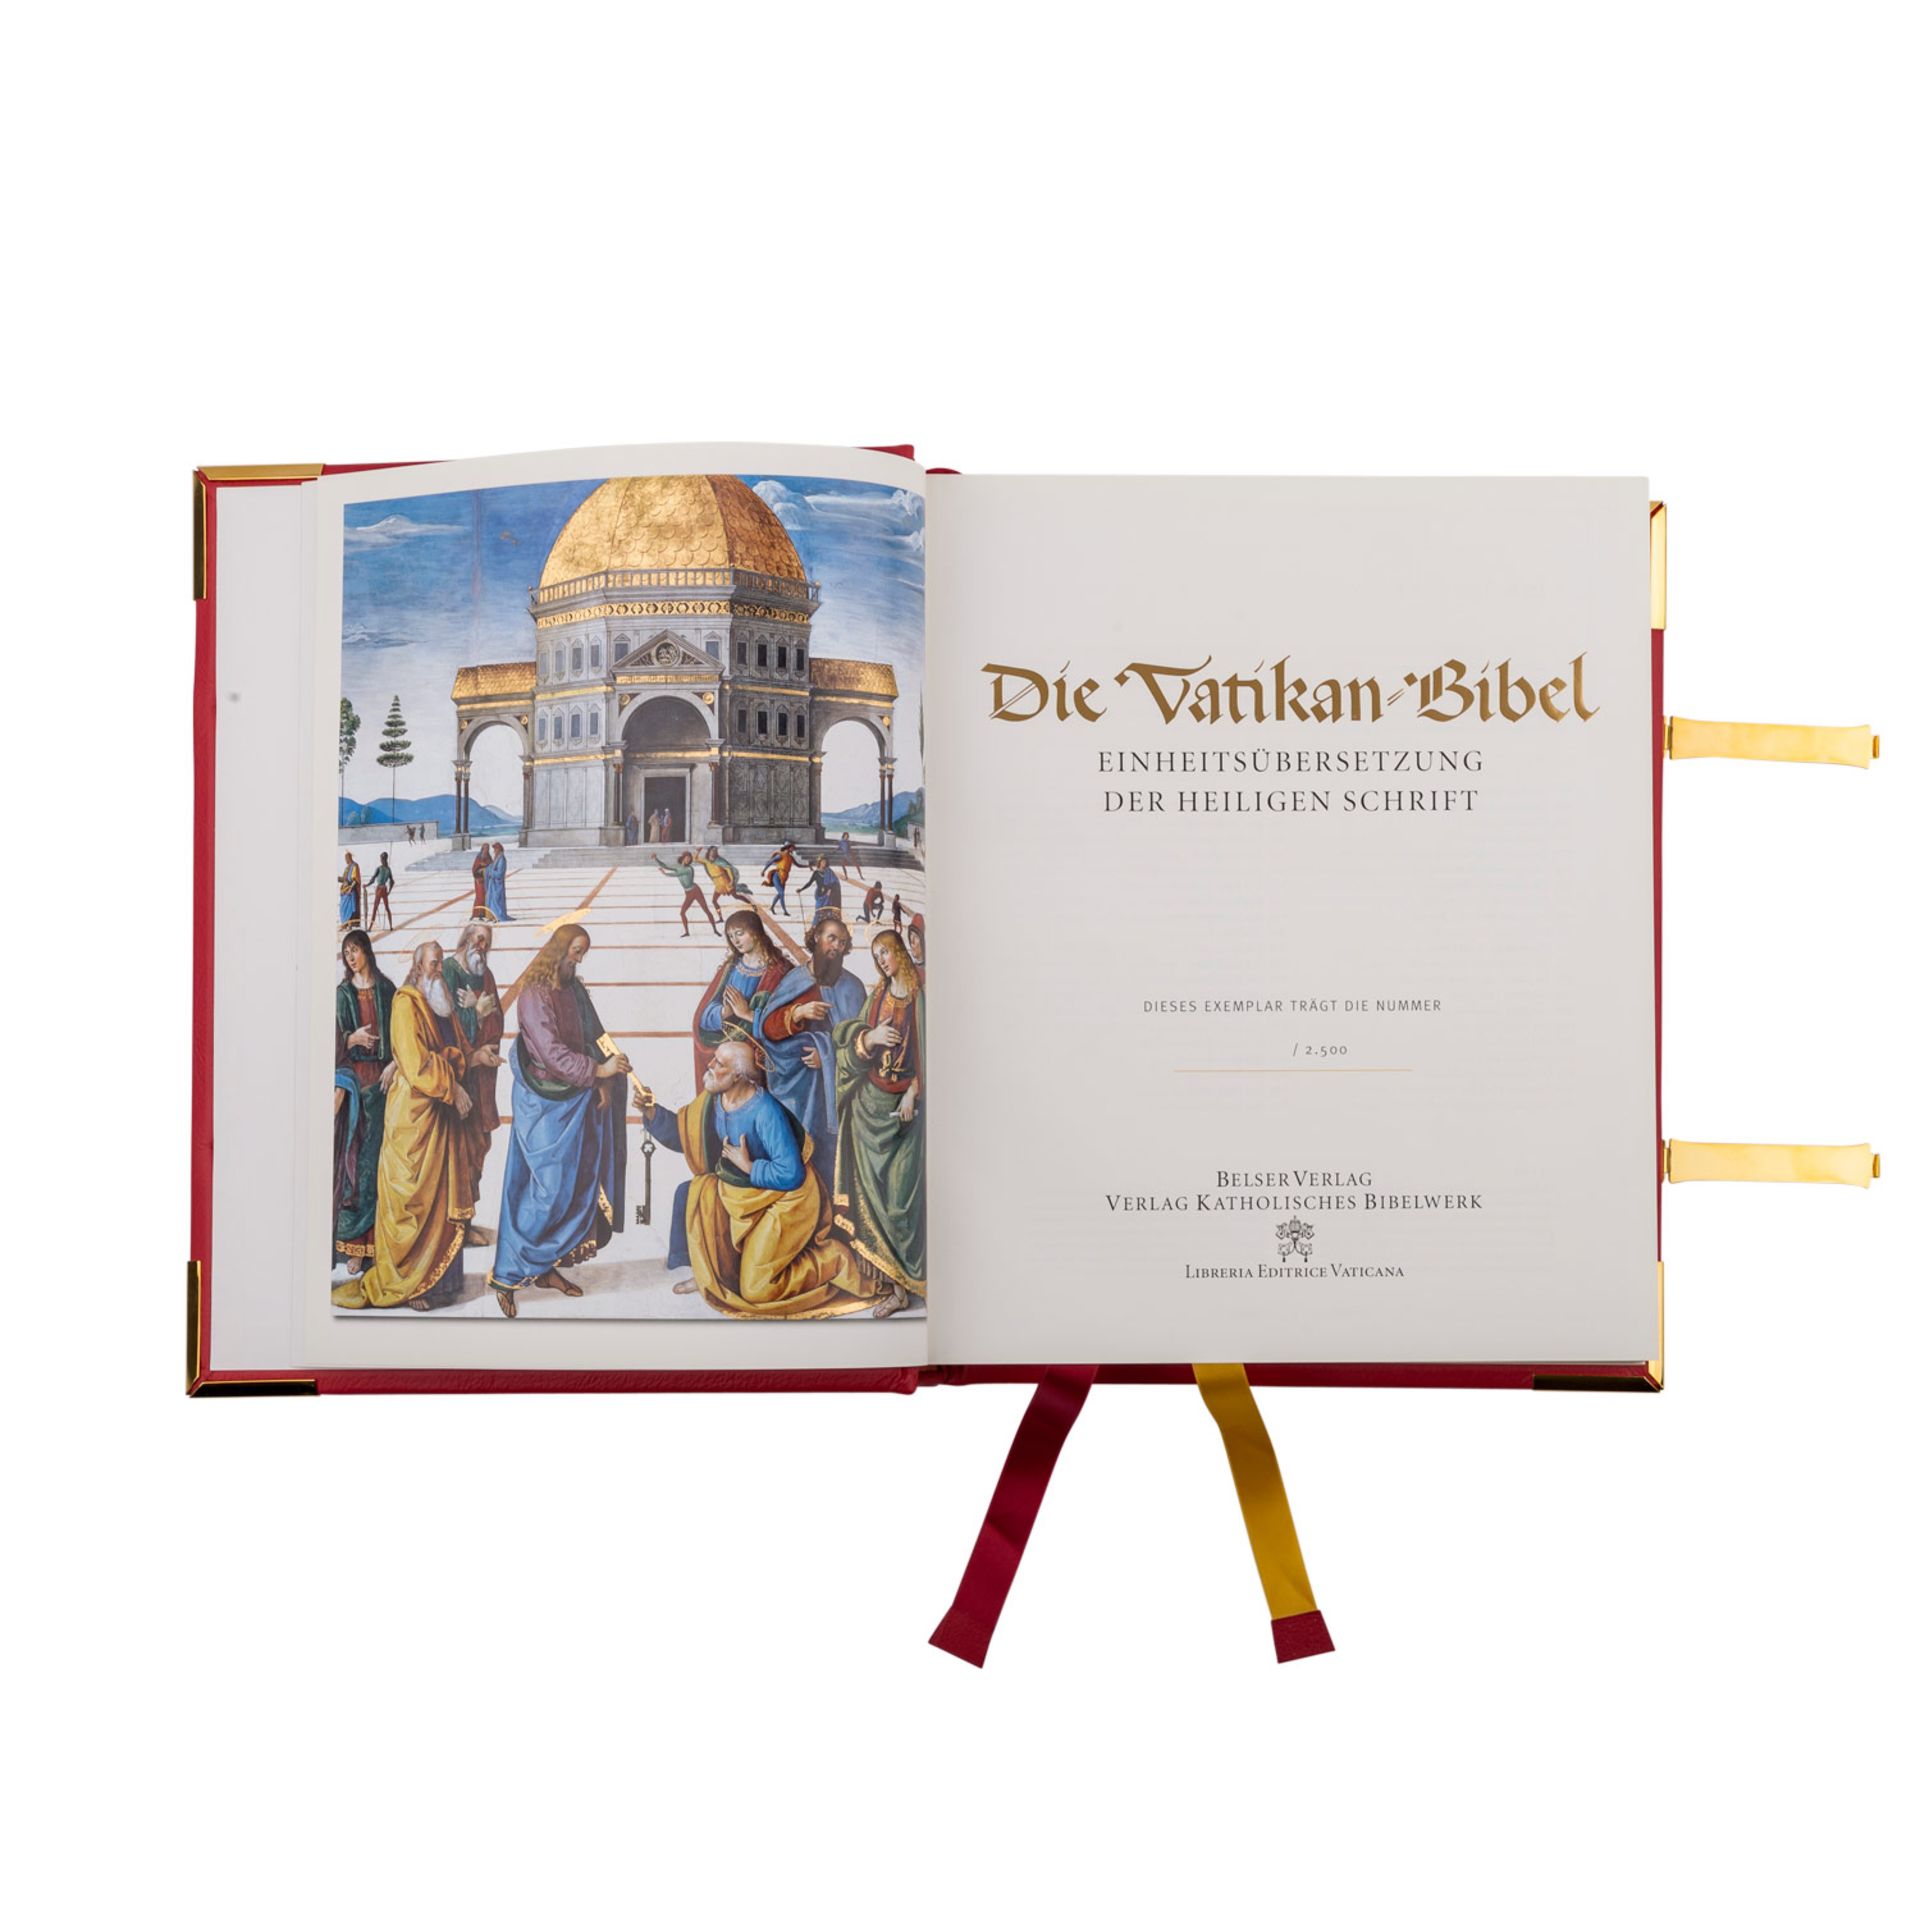 VATIKAN BIBEL - Limitiertes Faksimile Exemplareines wertvollen Bibel-Manuskripts. Roter